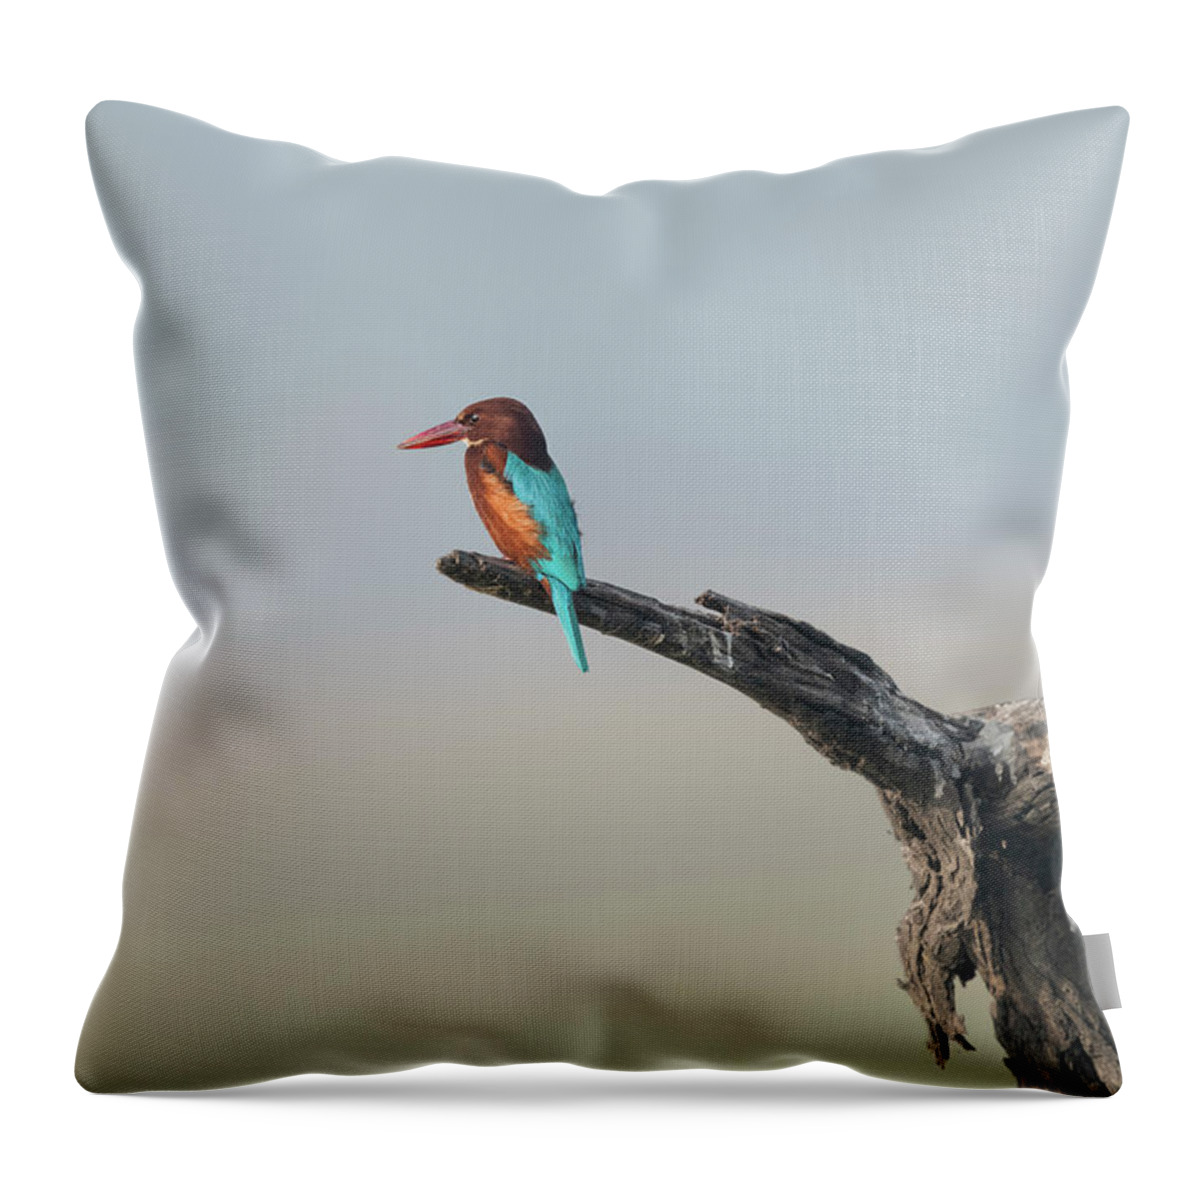 White-throated Kingfisher Throw Pillow featuring the photograph White-throated Kingfisher #4 by Puttaswamy Ravishankar